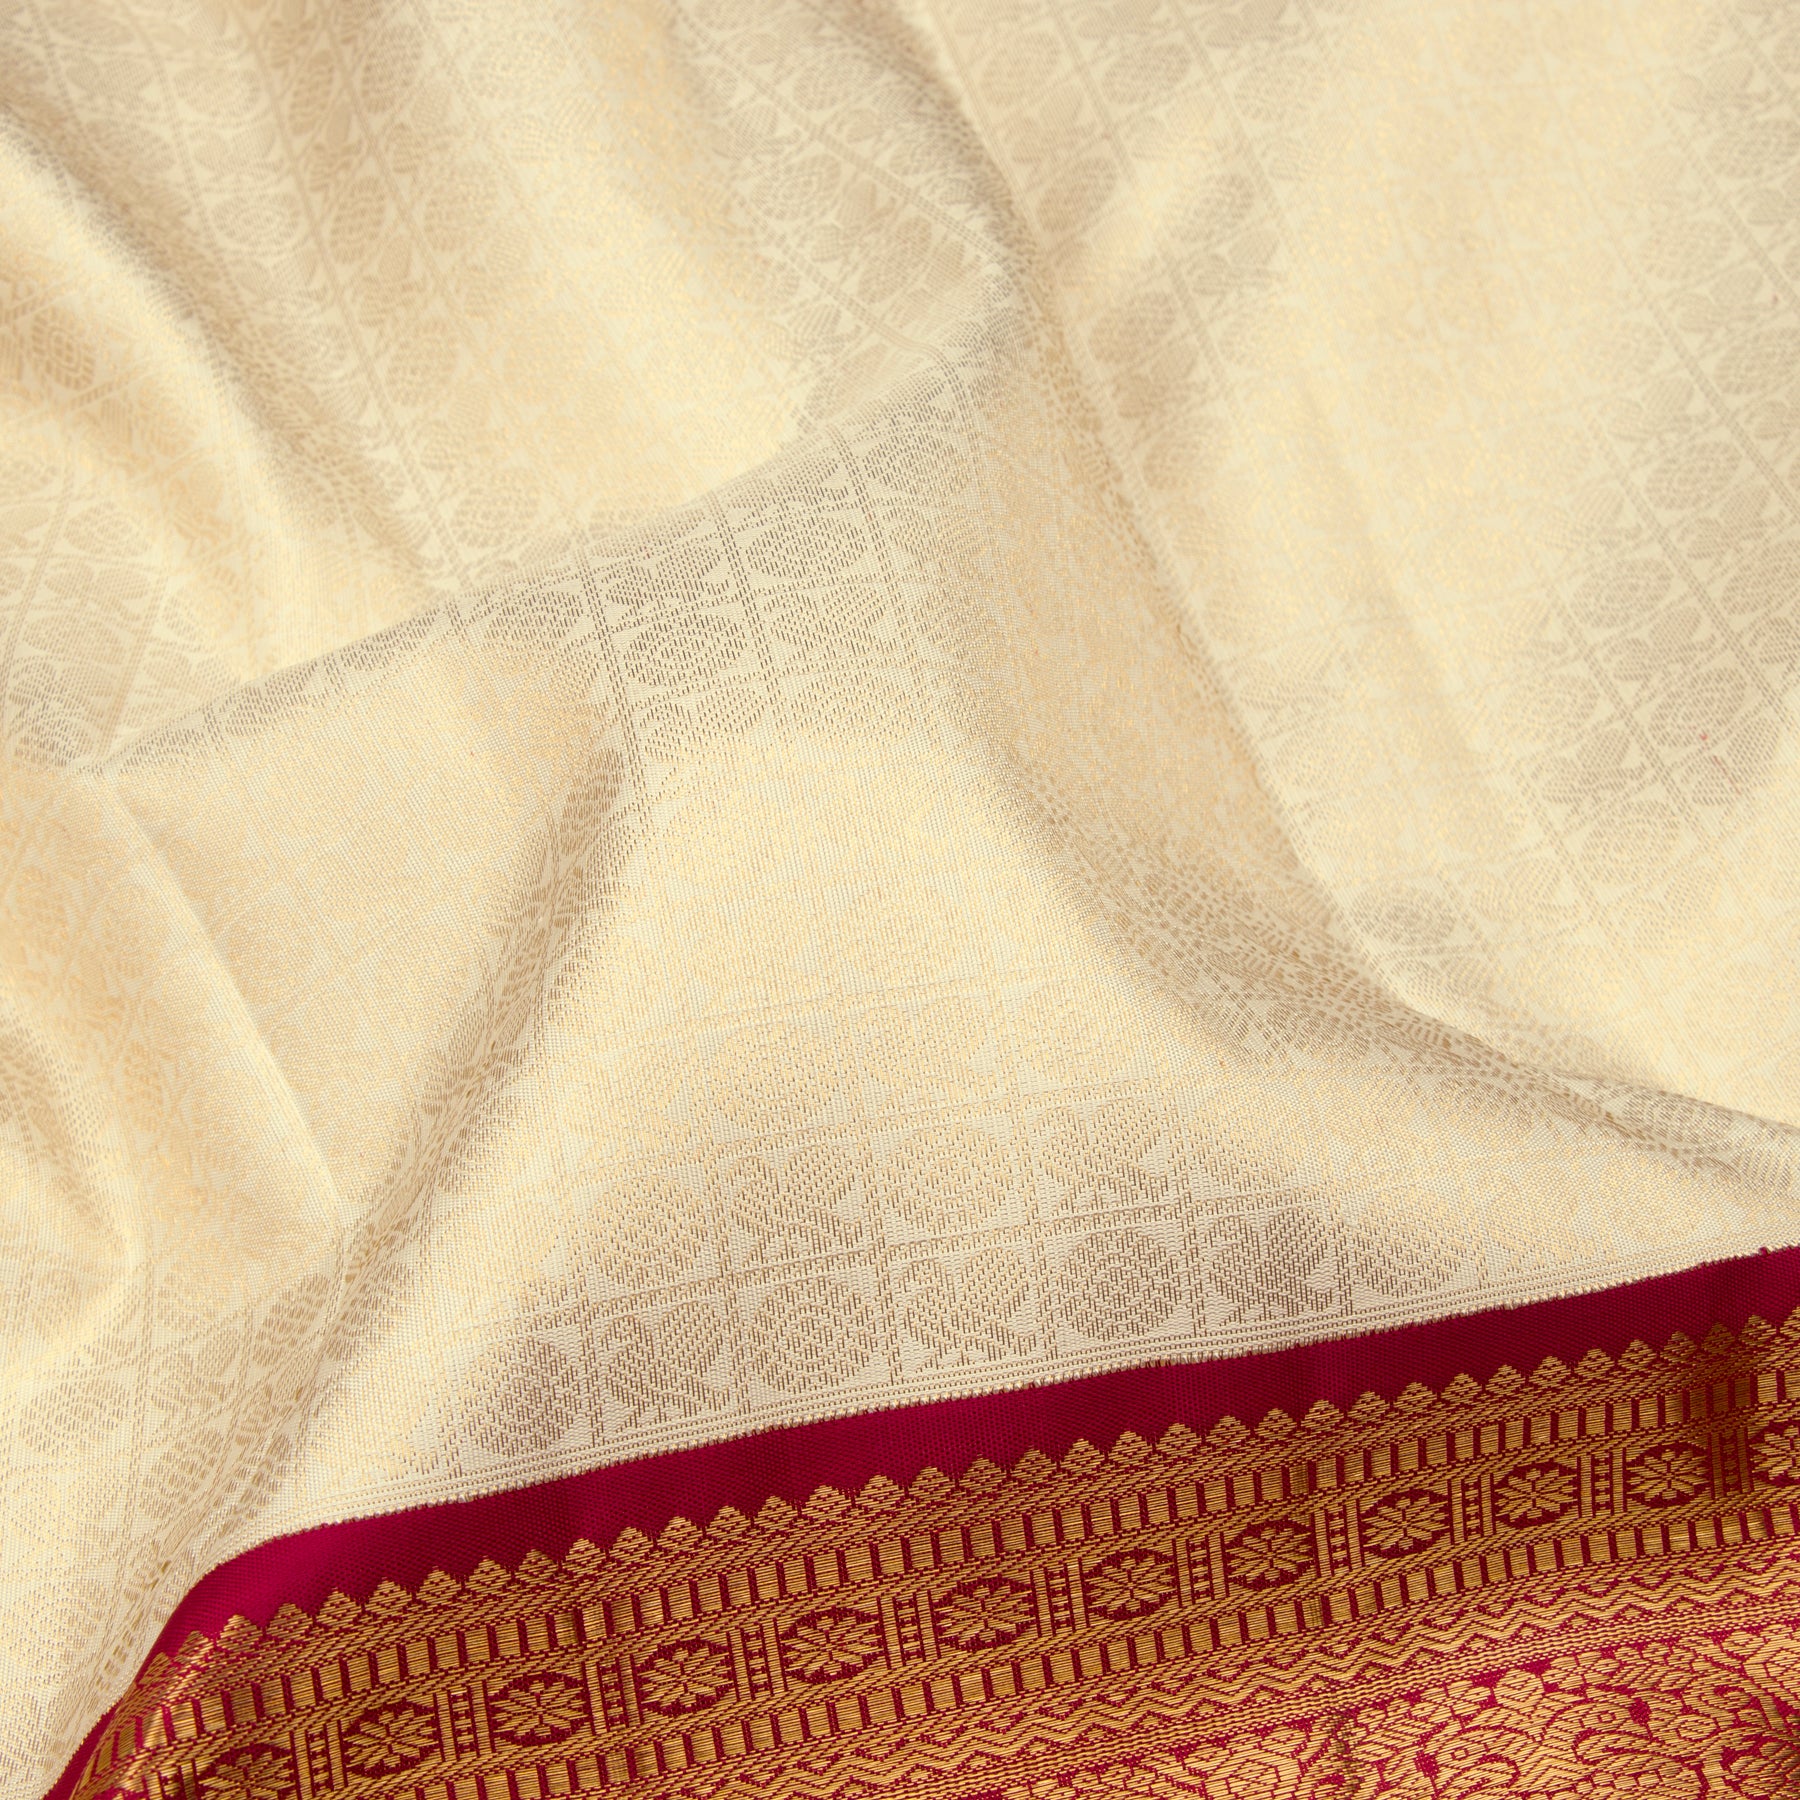 Kanakavalli Kanjivaram Silk Sari 23-110-HS001-02992 - Fabric View